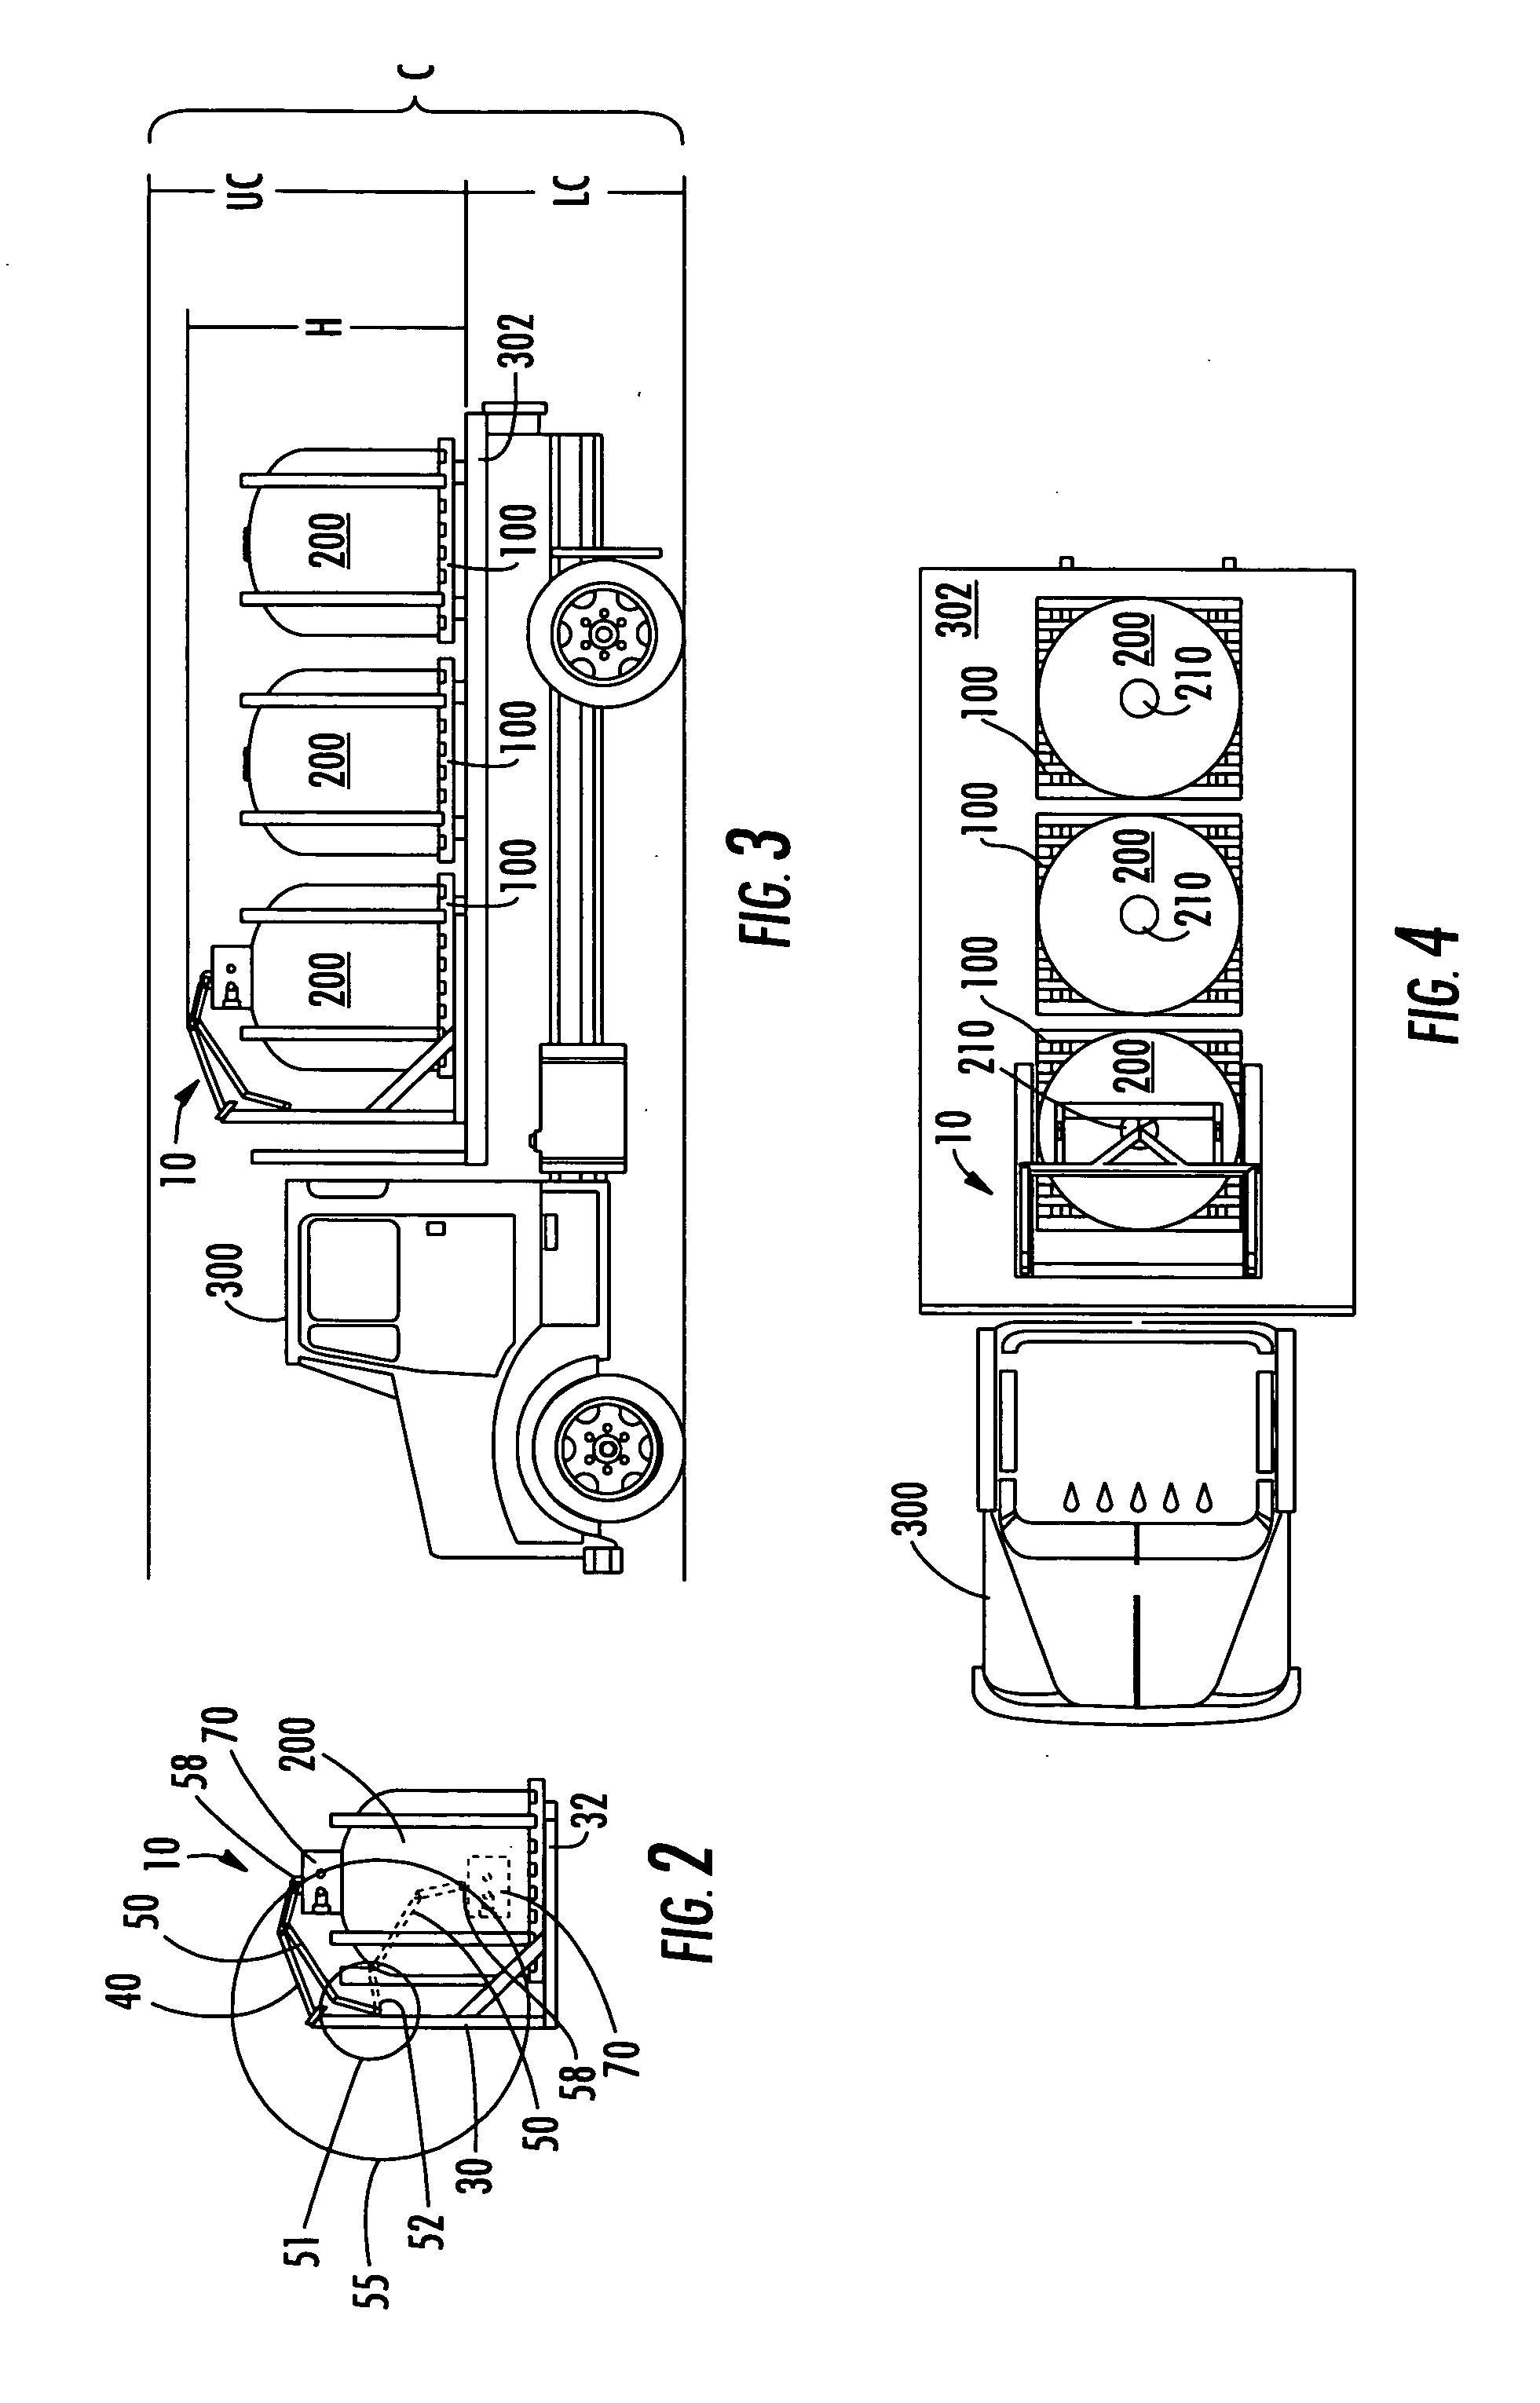 Bulk transfer dispensing device and method